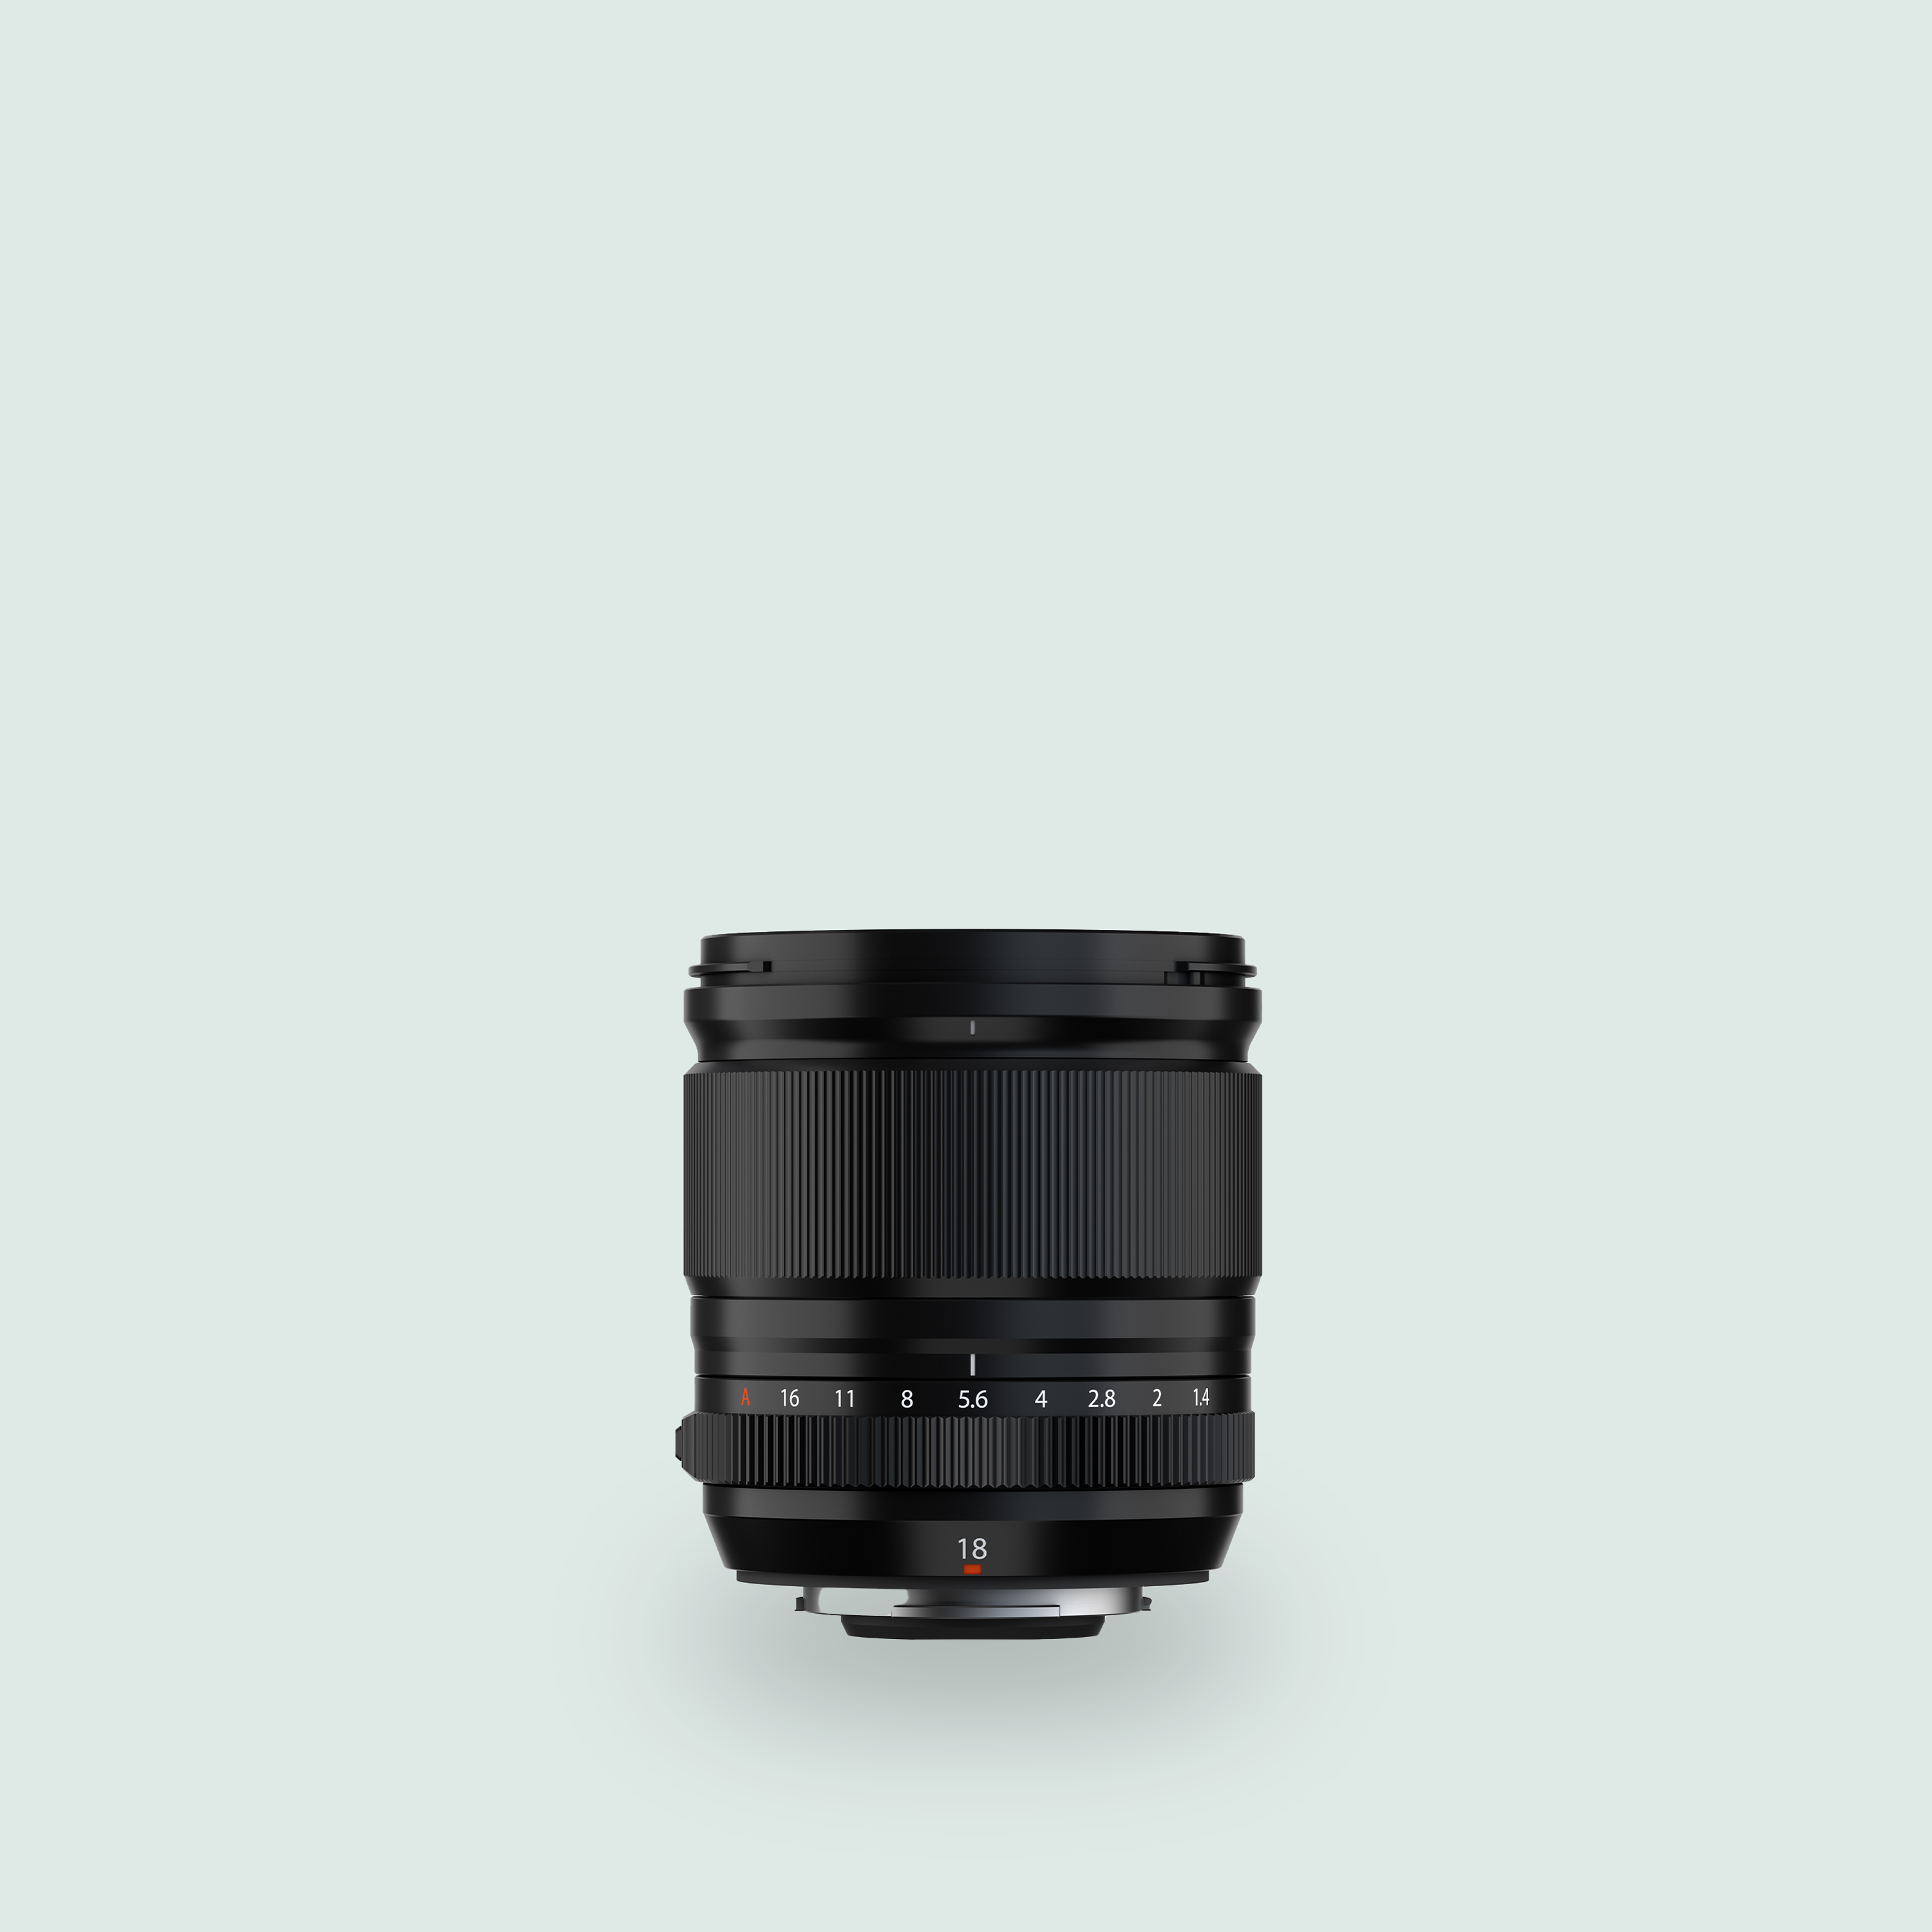 XF 56mm F1.2 R WR Lens | Fujifilm AU House of Photography